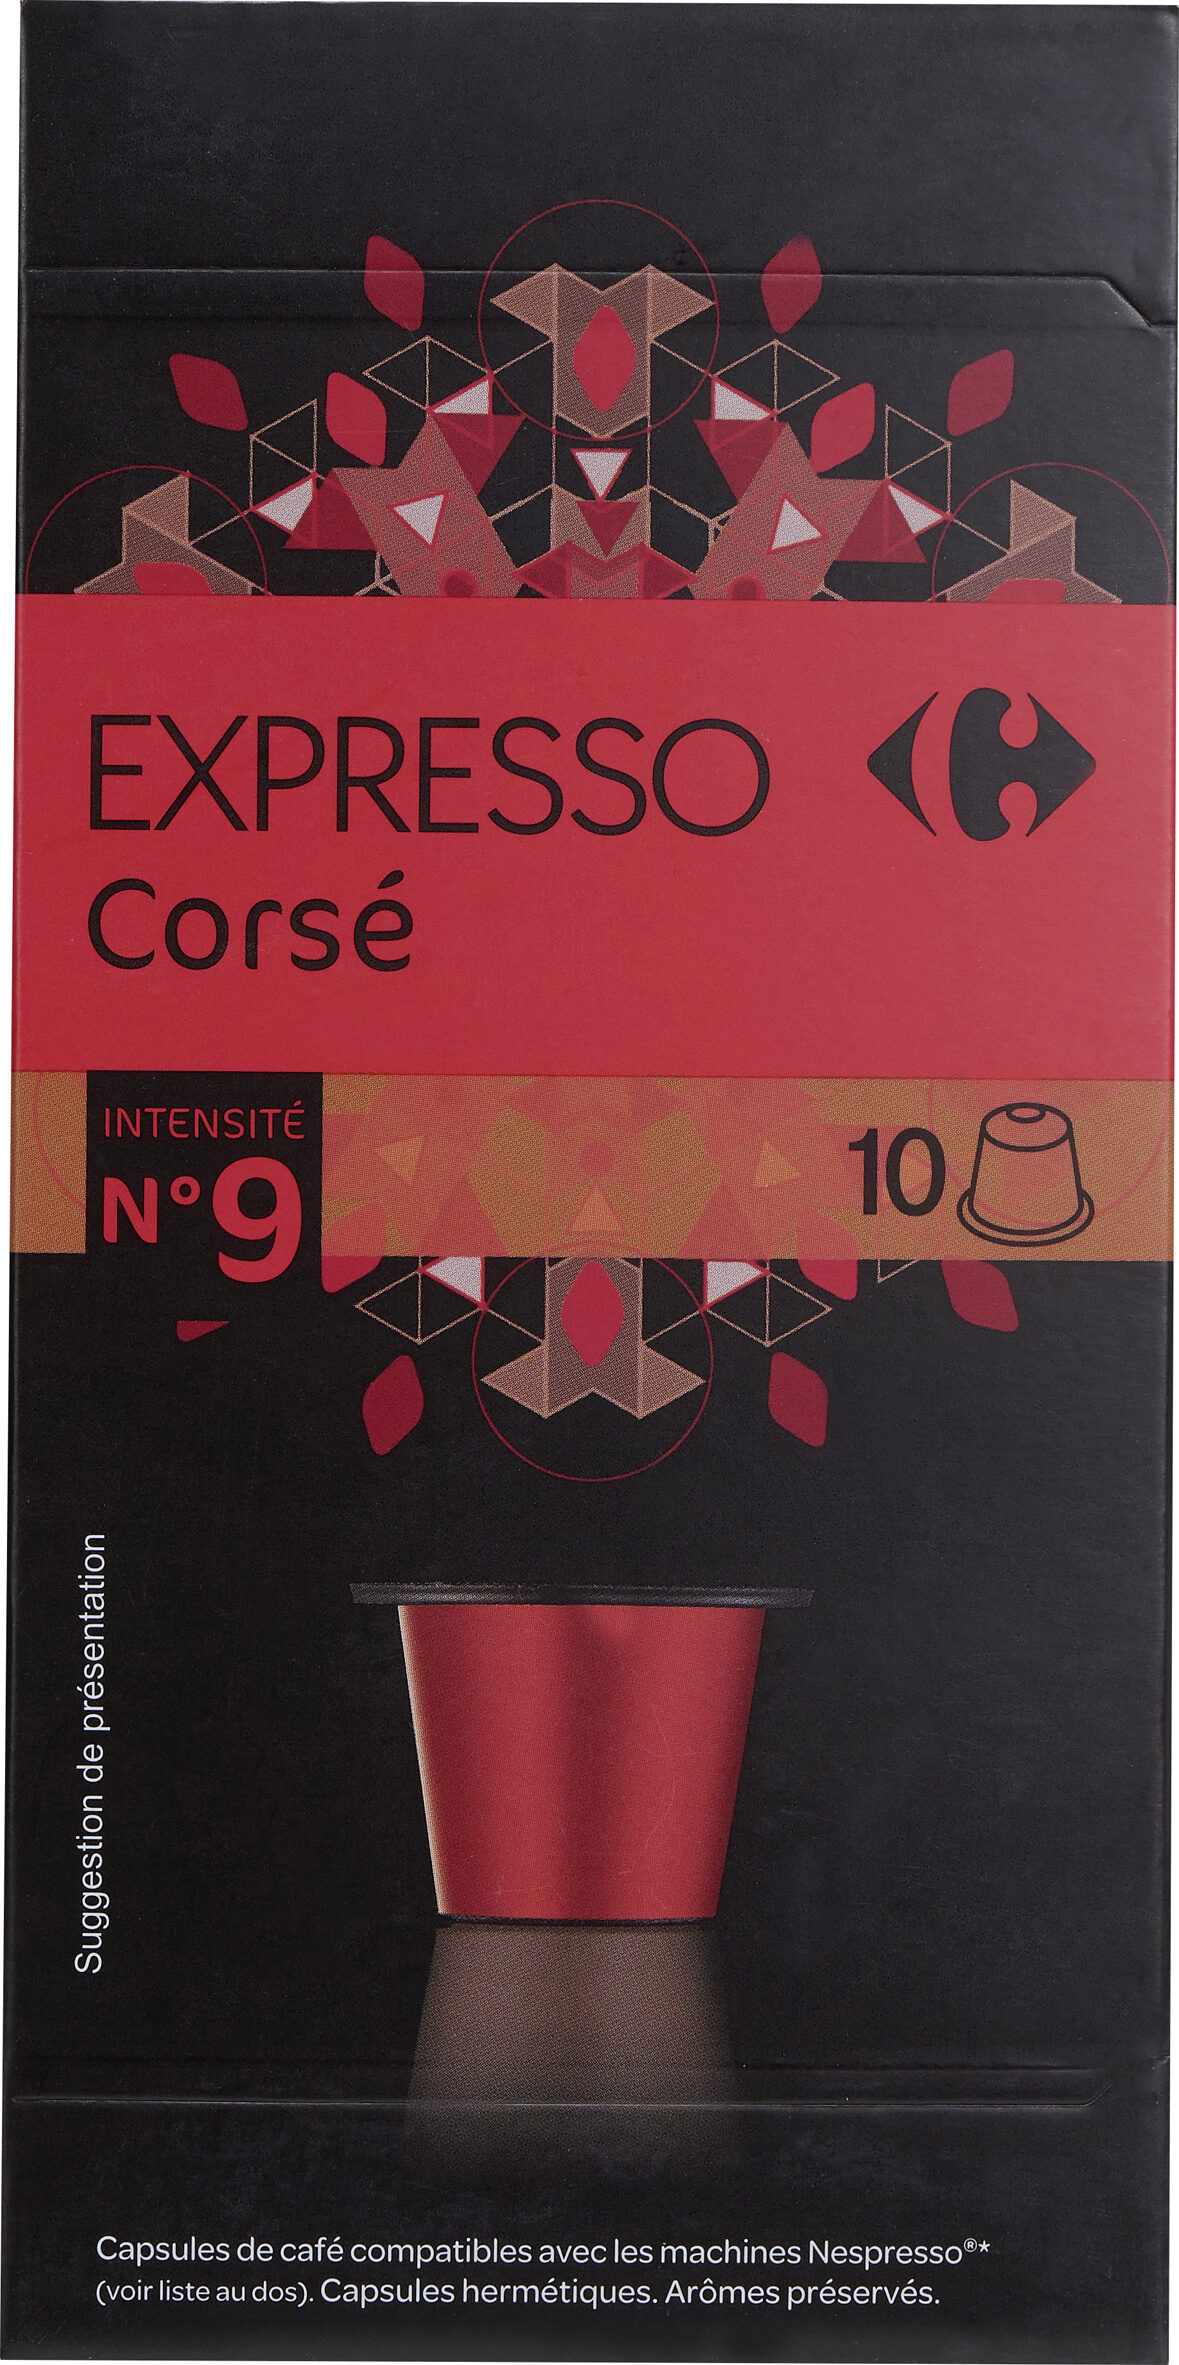 Expresso Corsé - Product - fr